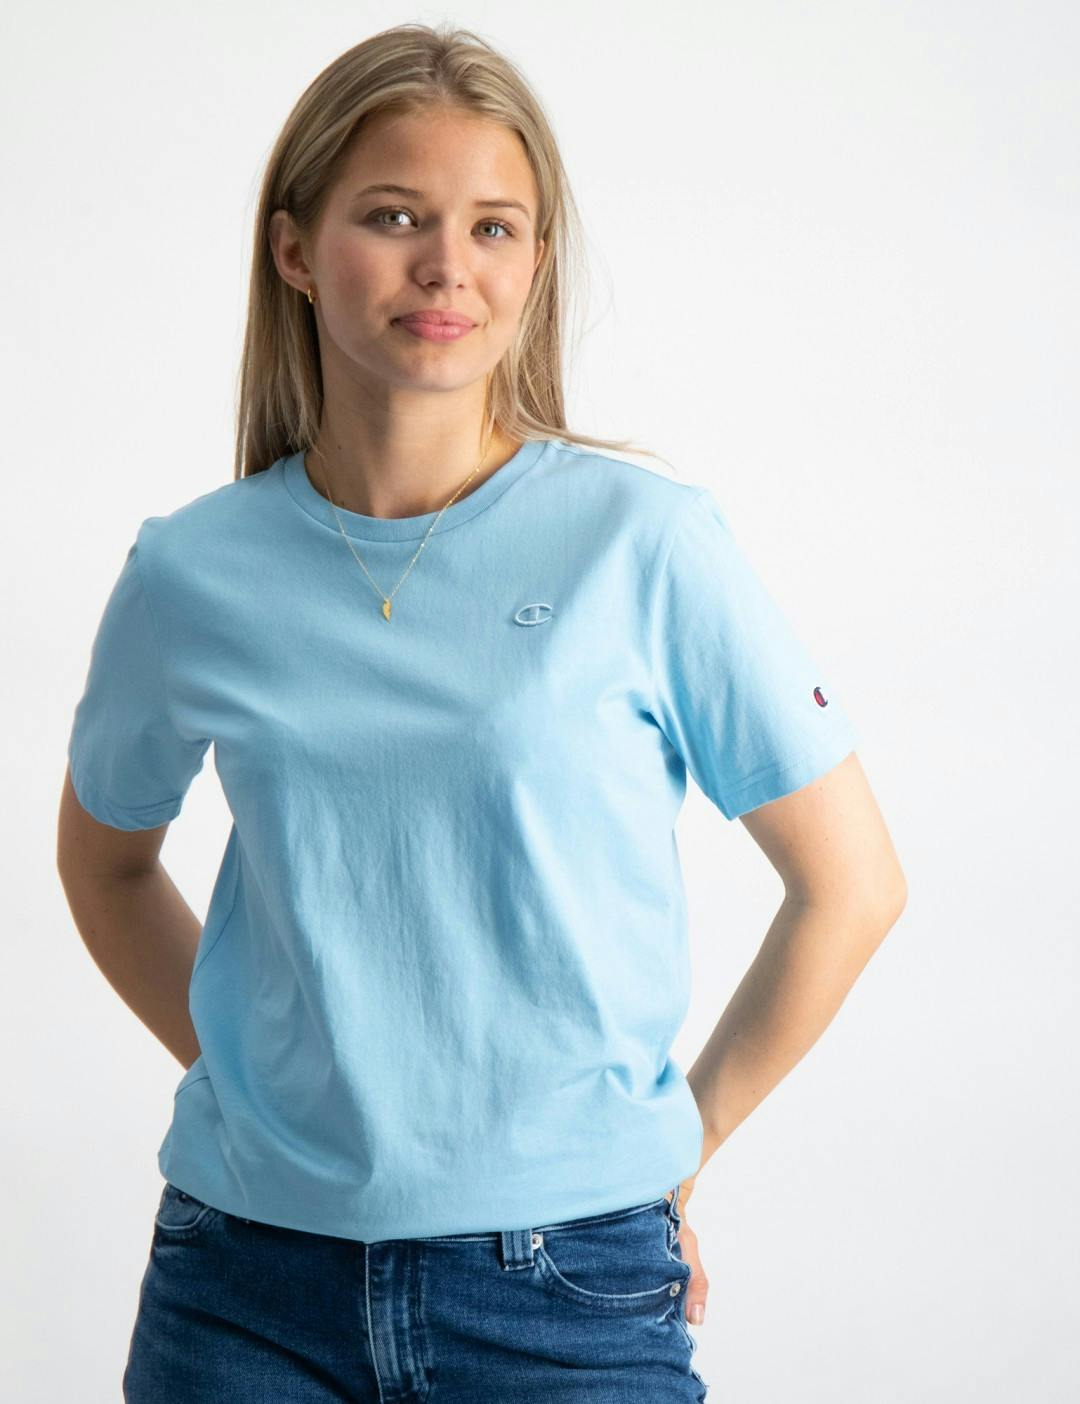 Blau Crewneck T-Shirt für Kids Mädchen Store | Brand